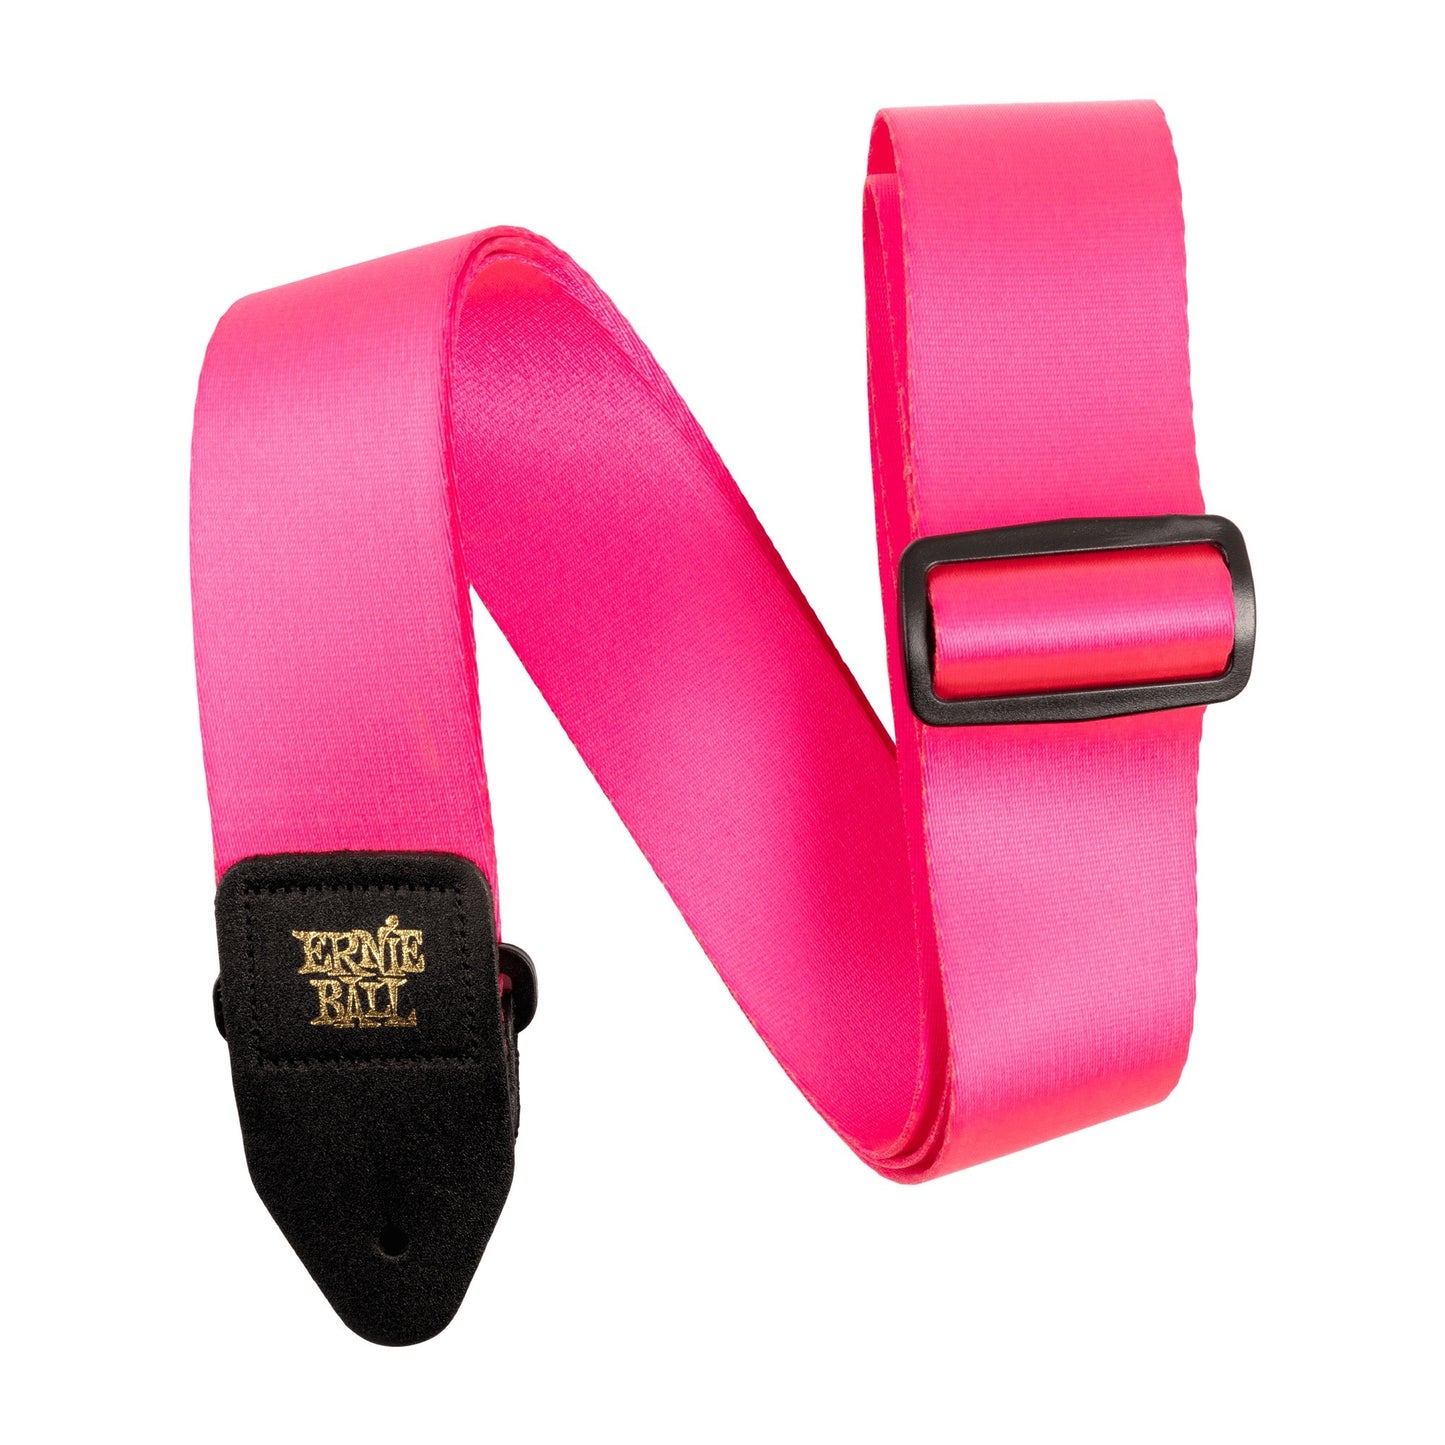 Ernie Ball Neon Pink Premium Strap